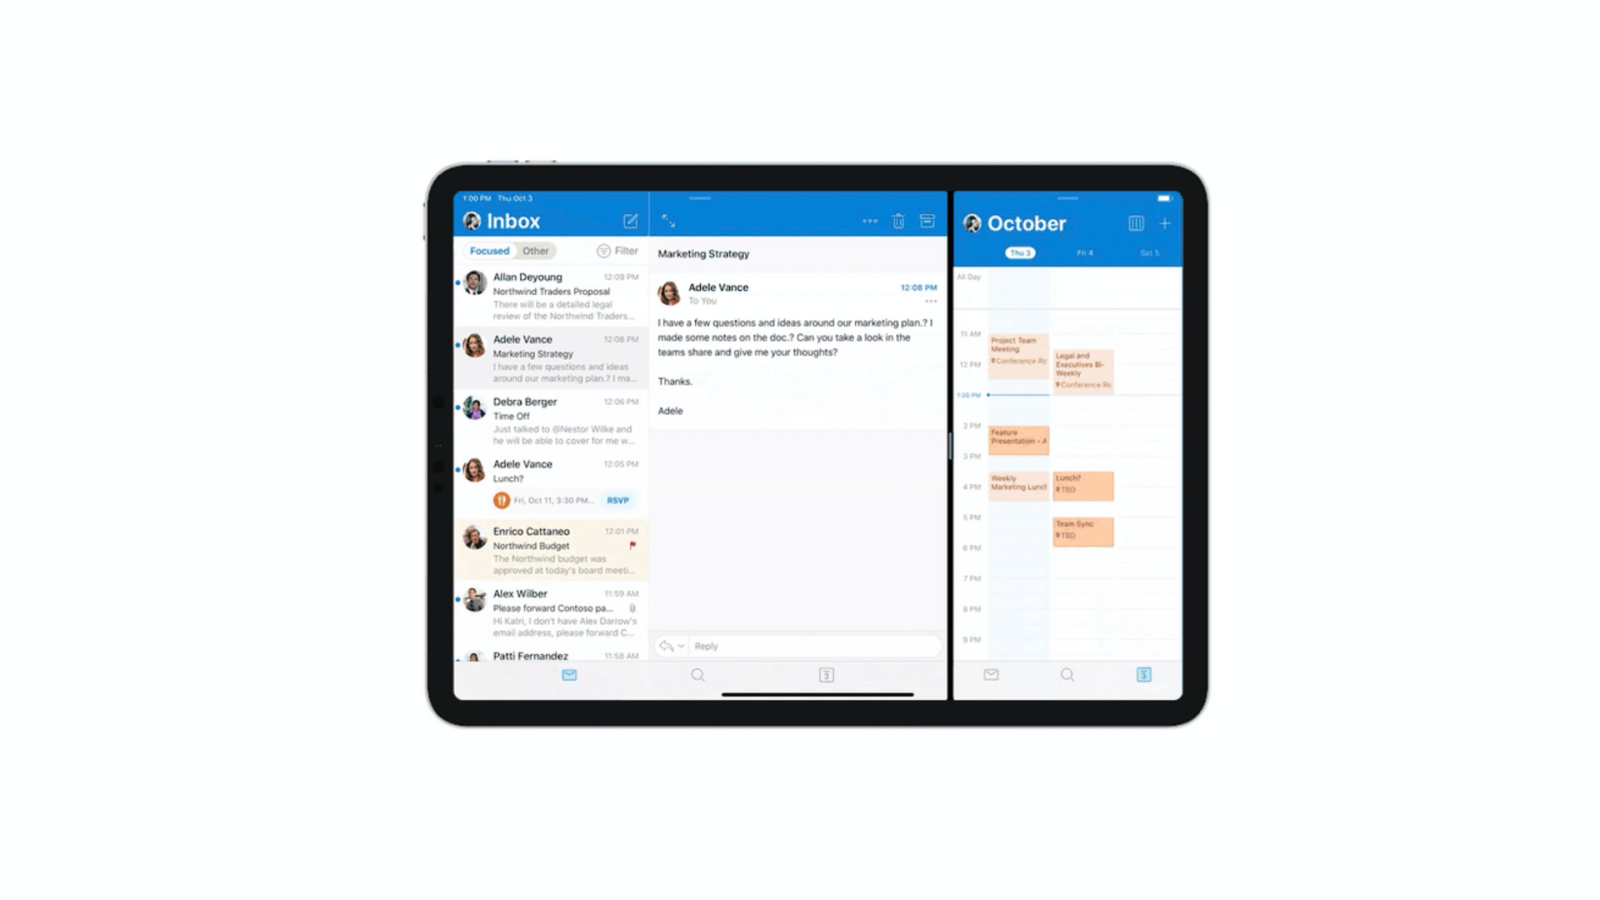 Microsoft Outlook iPad